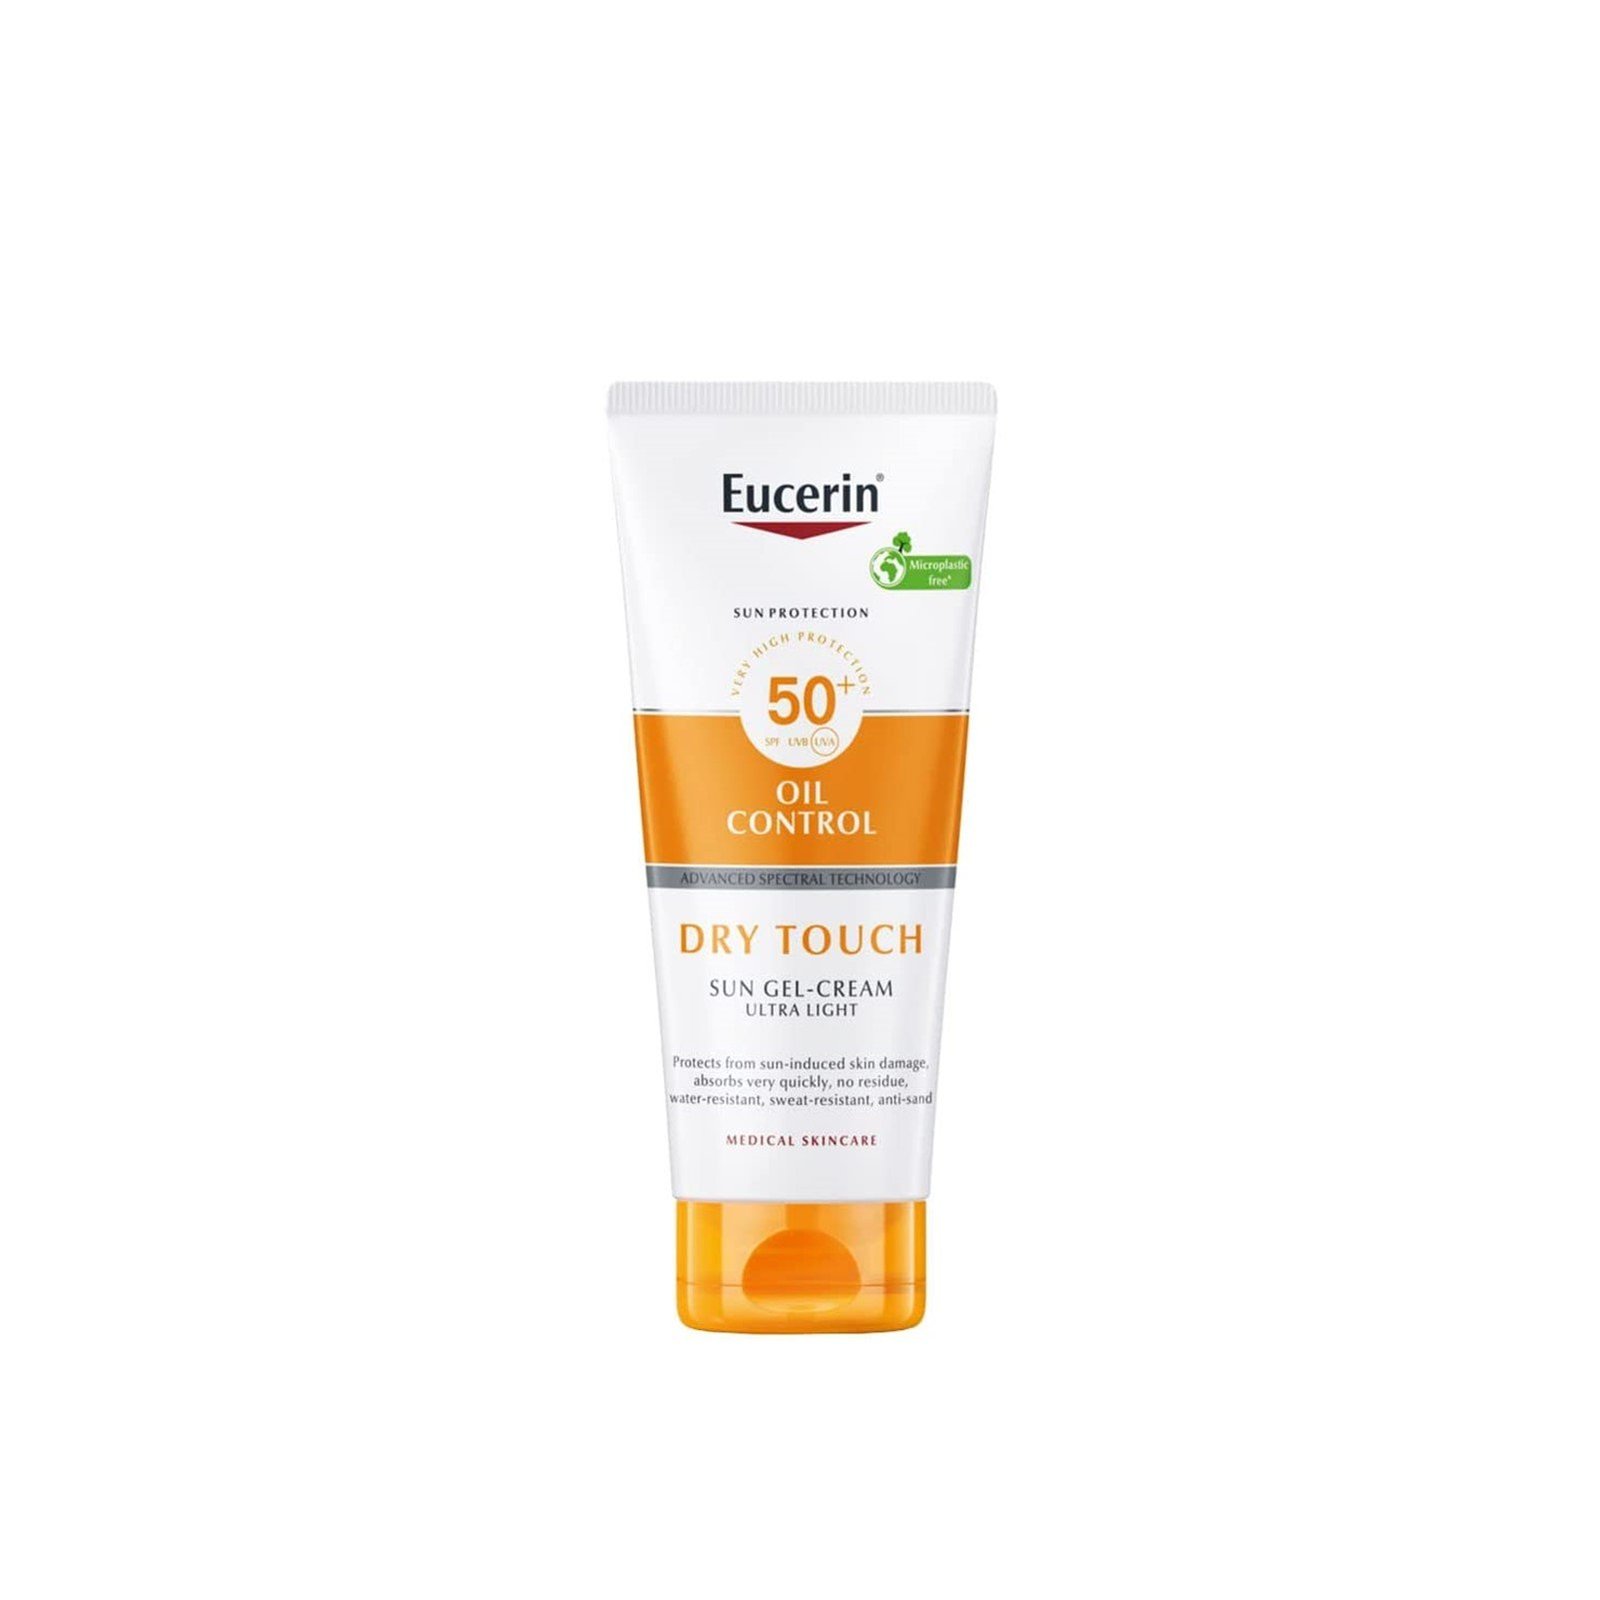 Eucerin Sun Protection Oil Control Sun Gel-Cream SPF 50 50ml